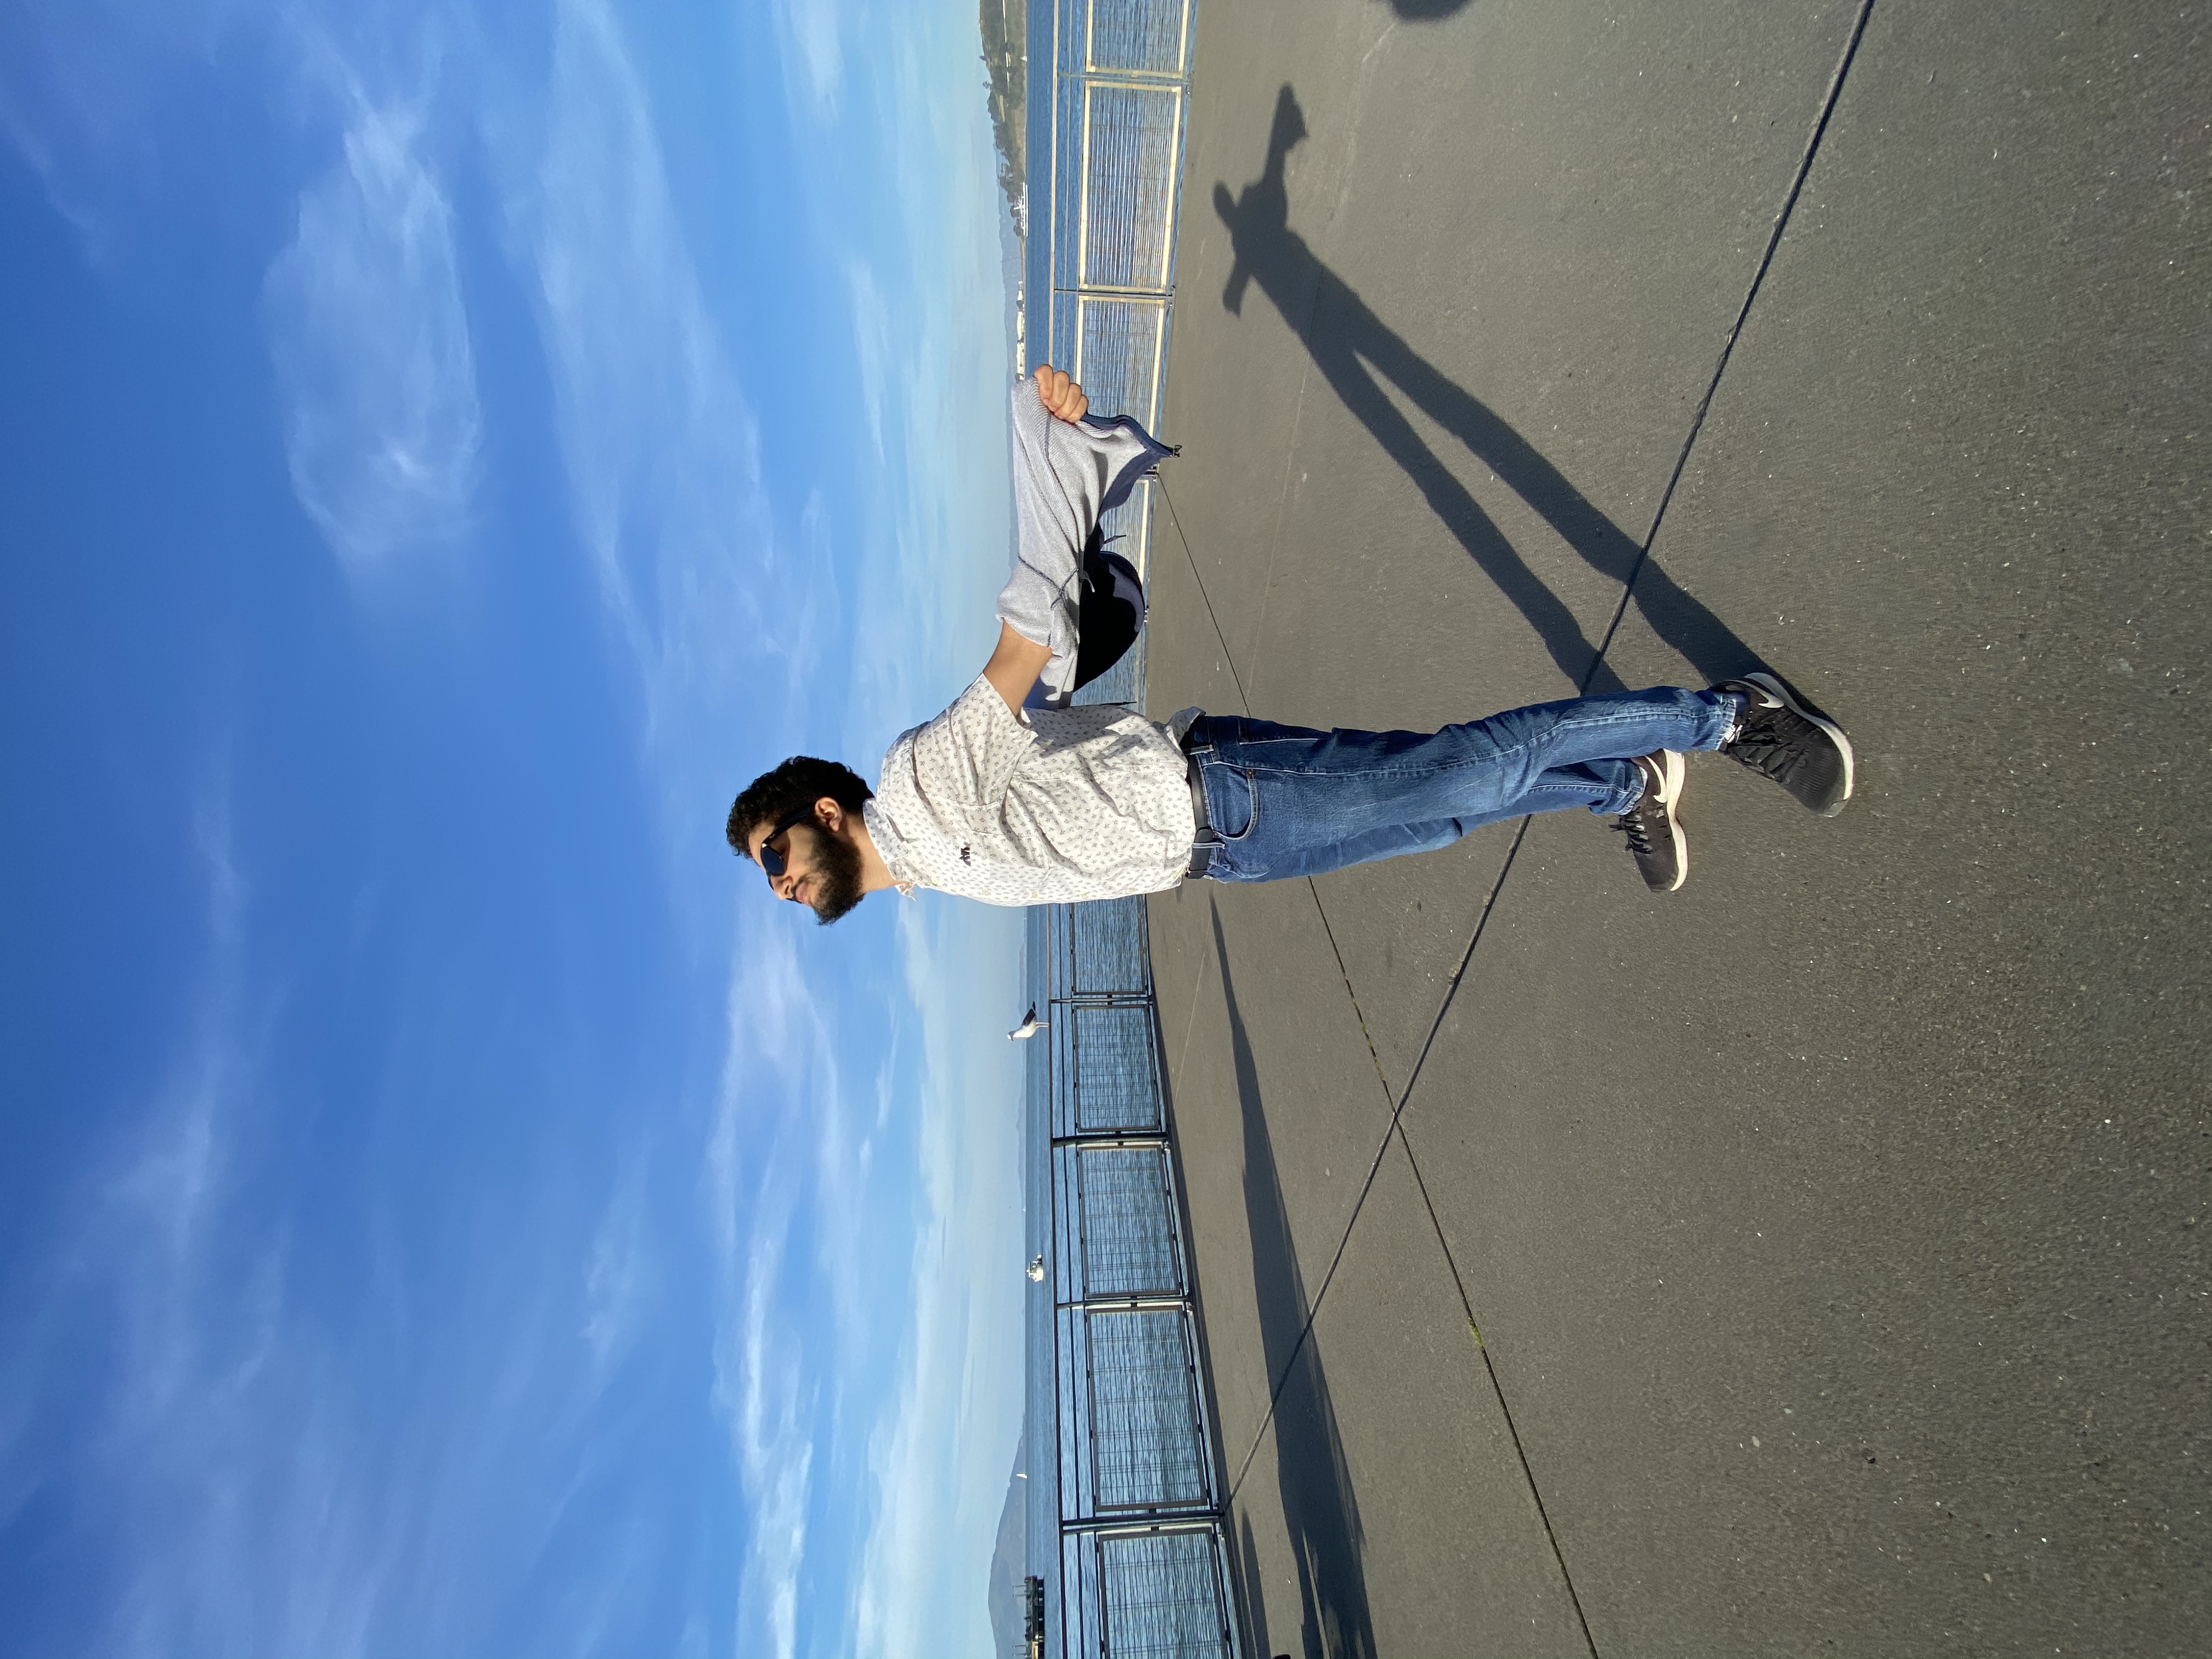 Me on a pier in San Francisco, Jan 2020